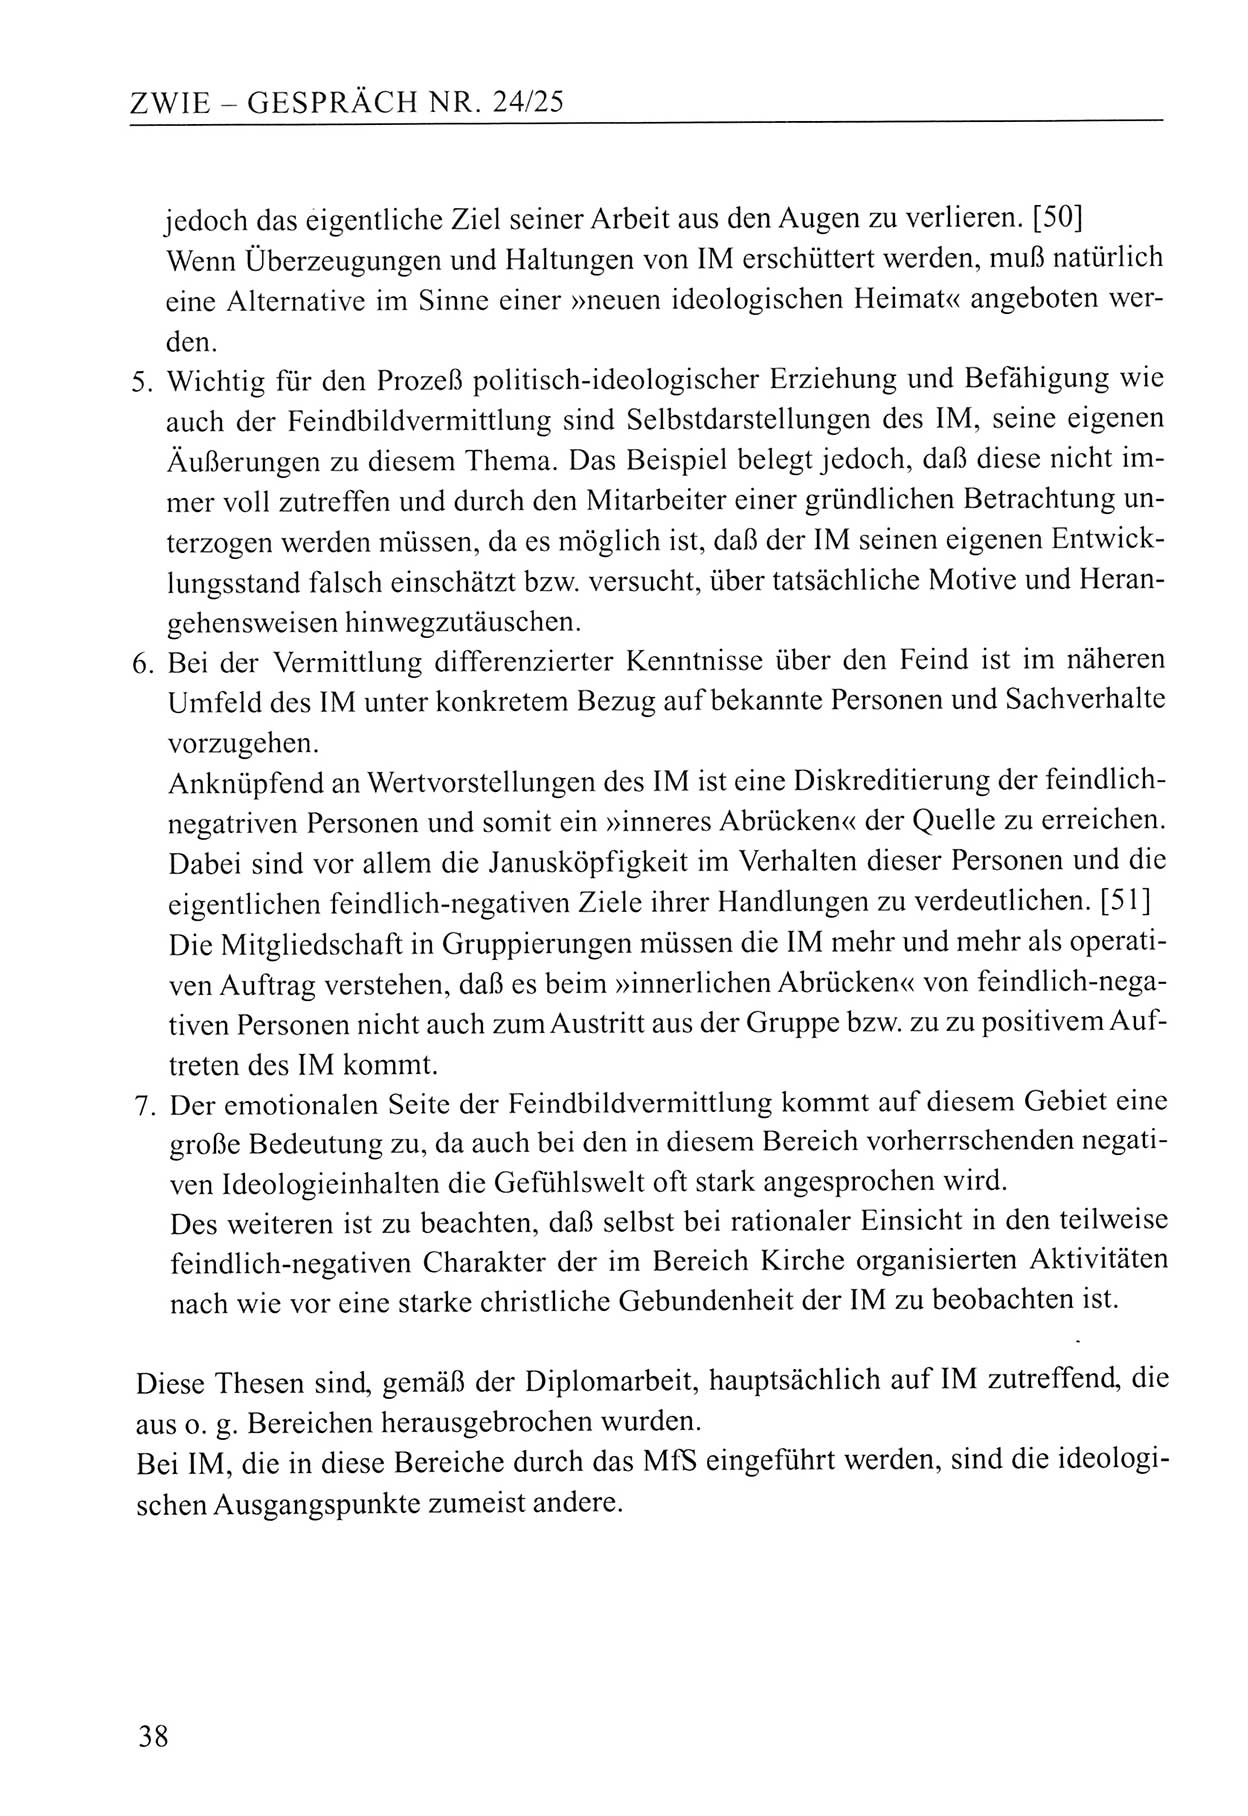 Zwie-Gespräch, Beiträge zum Umgang mit der Staatssicherheits-Vergangenheit [Deutsche Demokratische Republik (DDR)], Ausgabe Nr. 24/25, Berlin 1994, Seite 38 (Zwie-Gespr. Ausg. 24/25 1994, S. 38)